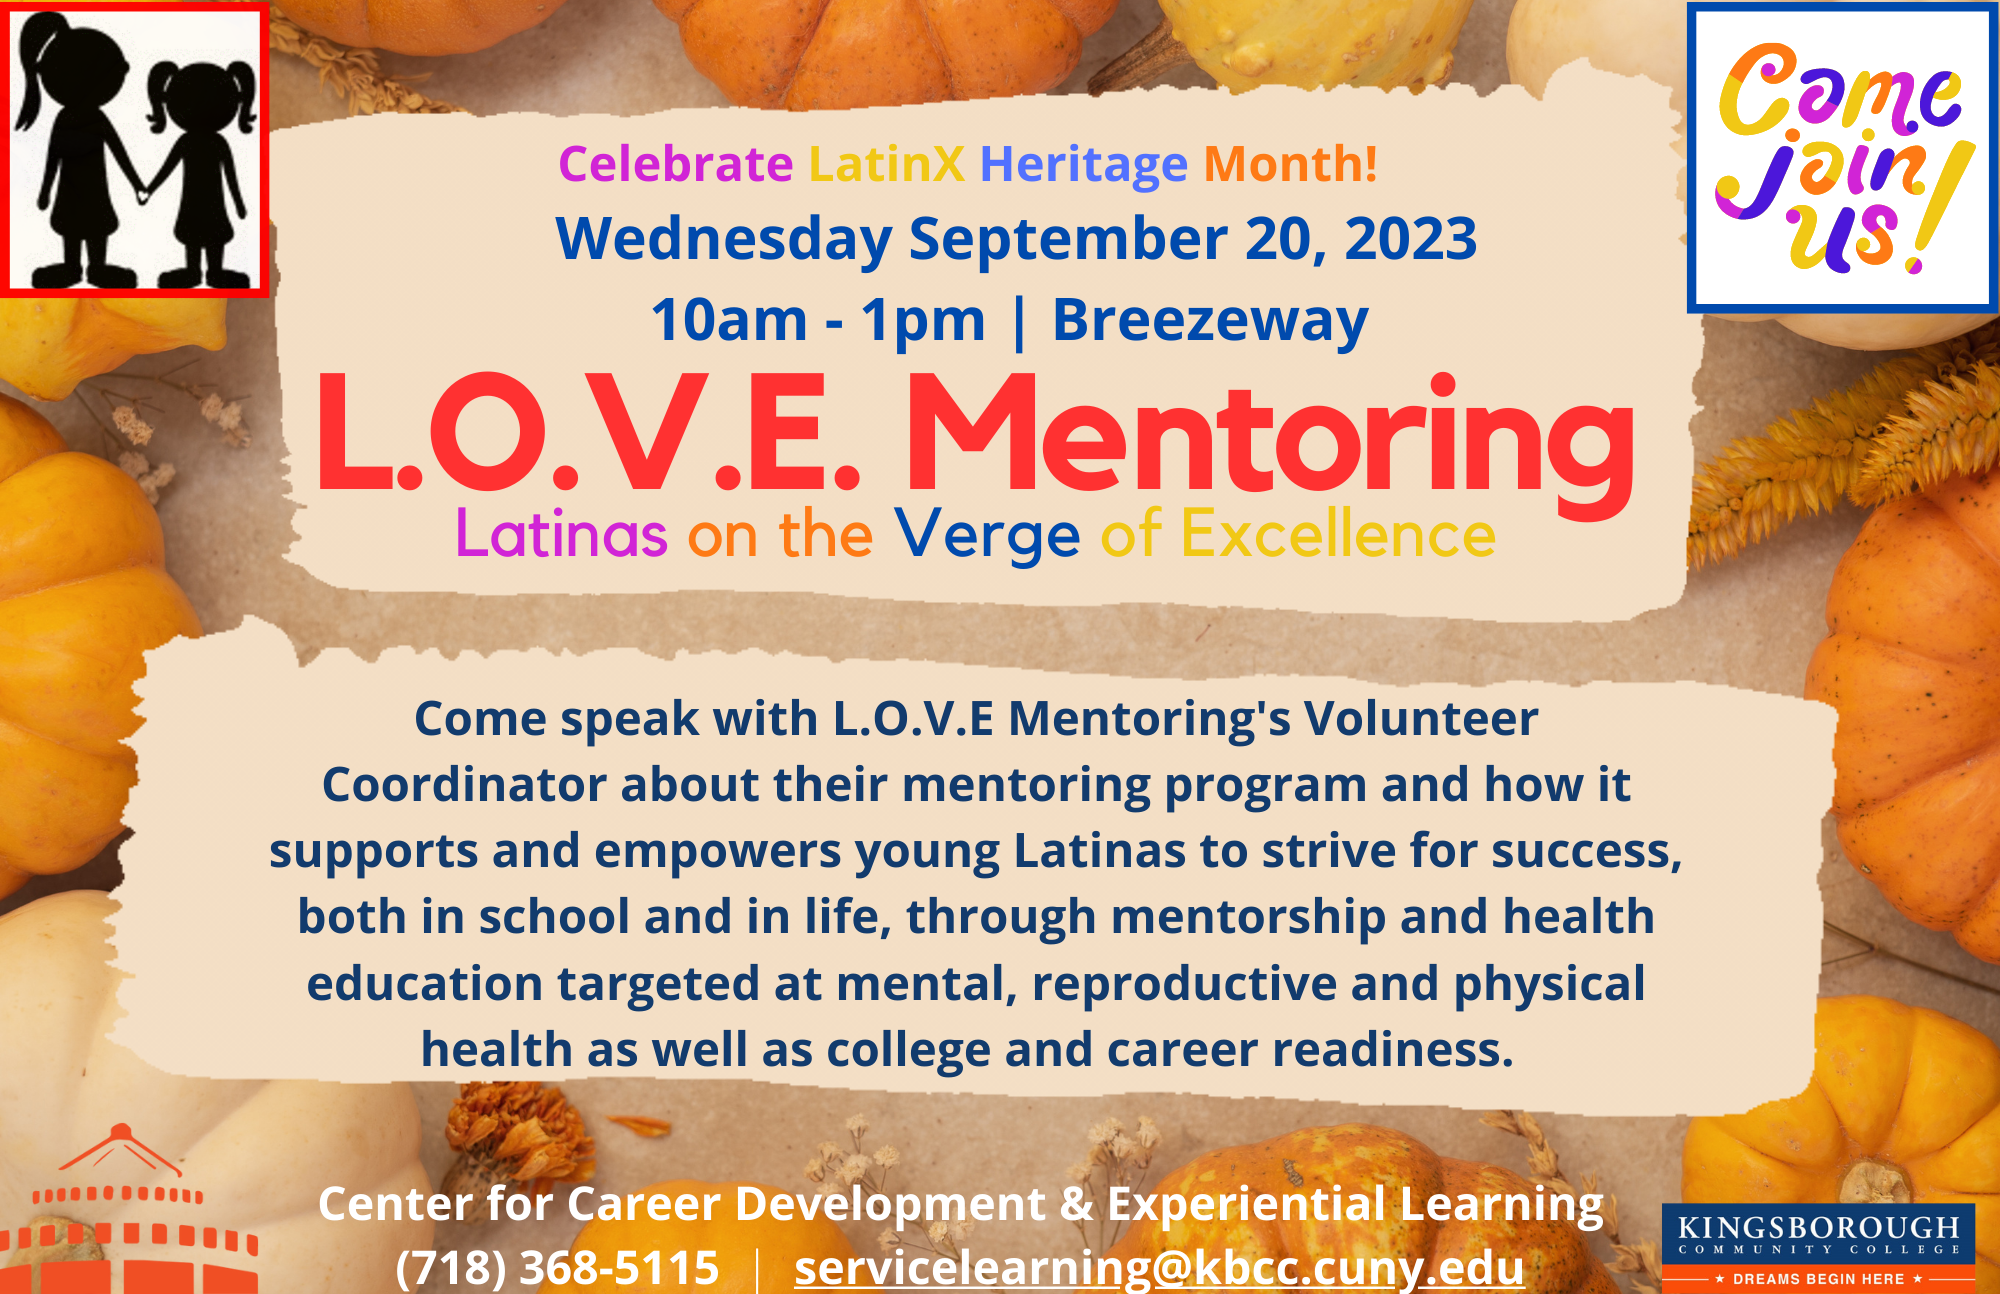 L.O.V.E Mentoring